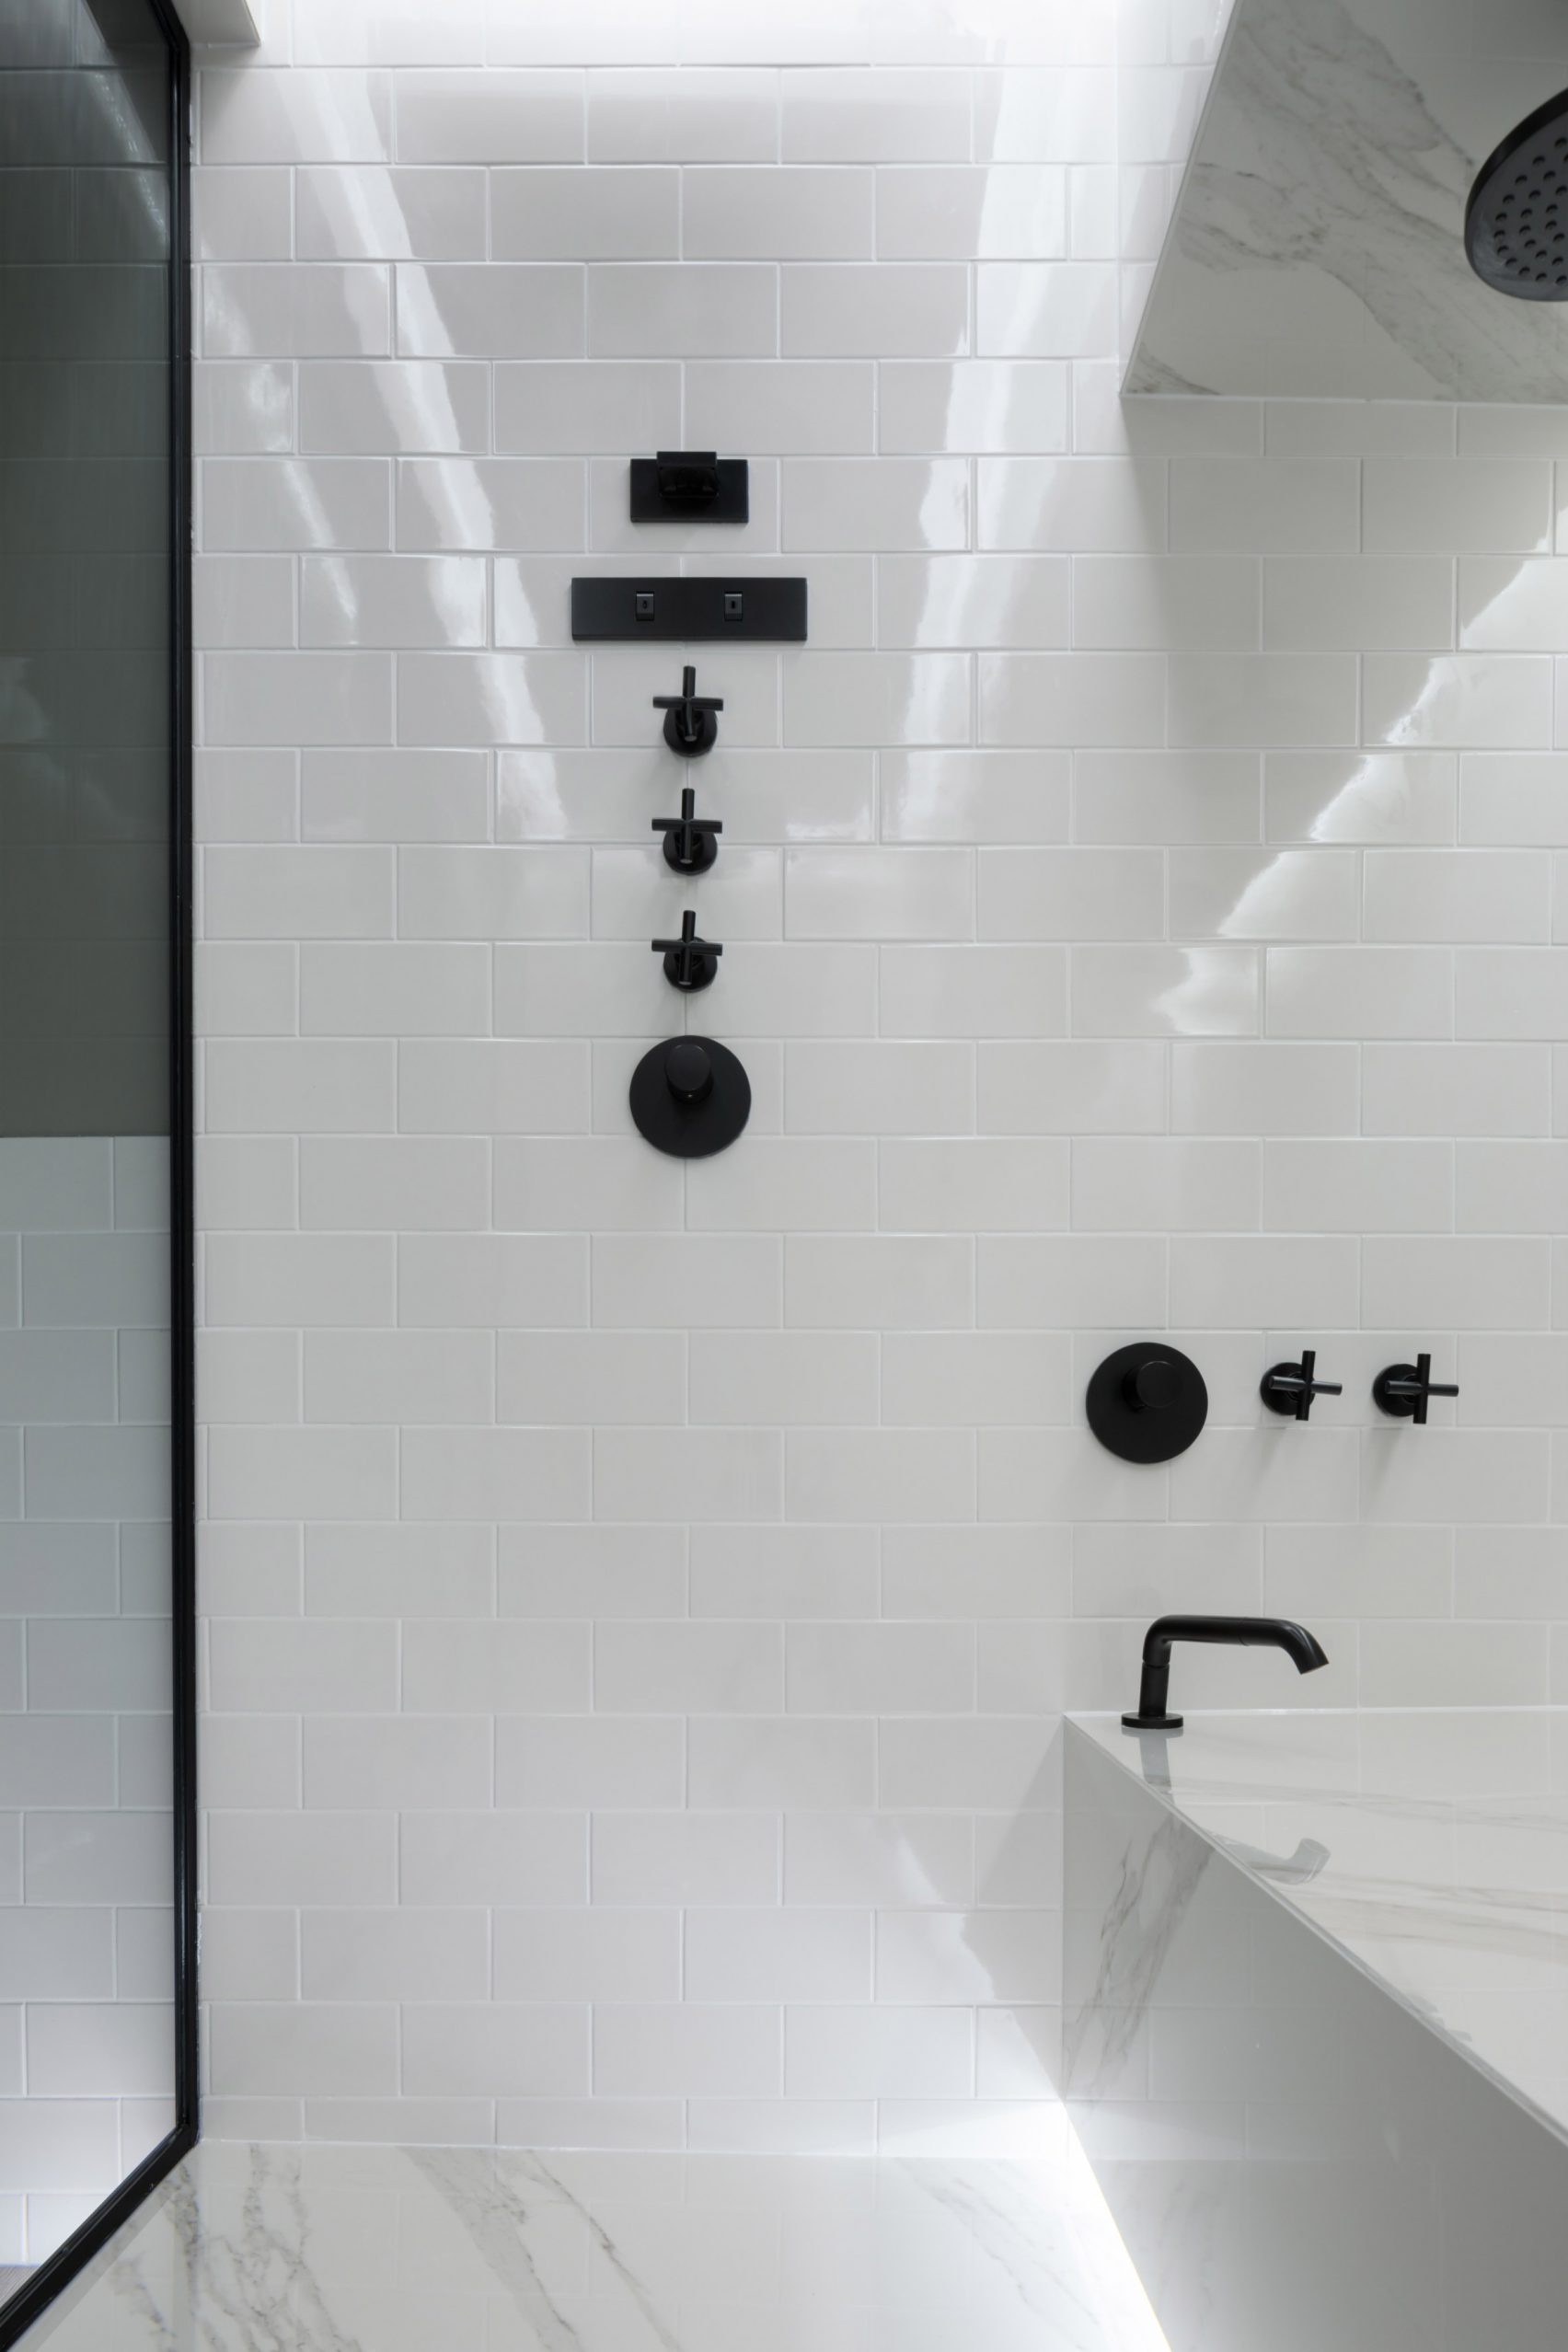 Sieger Design creëert kleine spa badkamer voor kleine appartementen